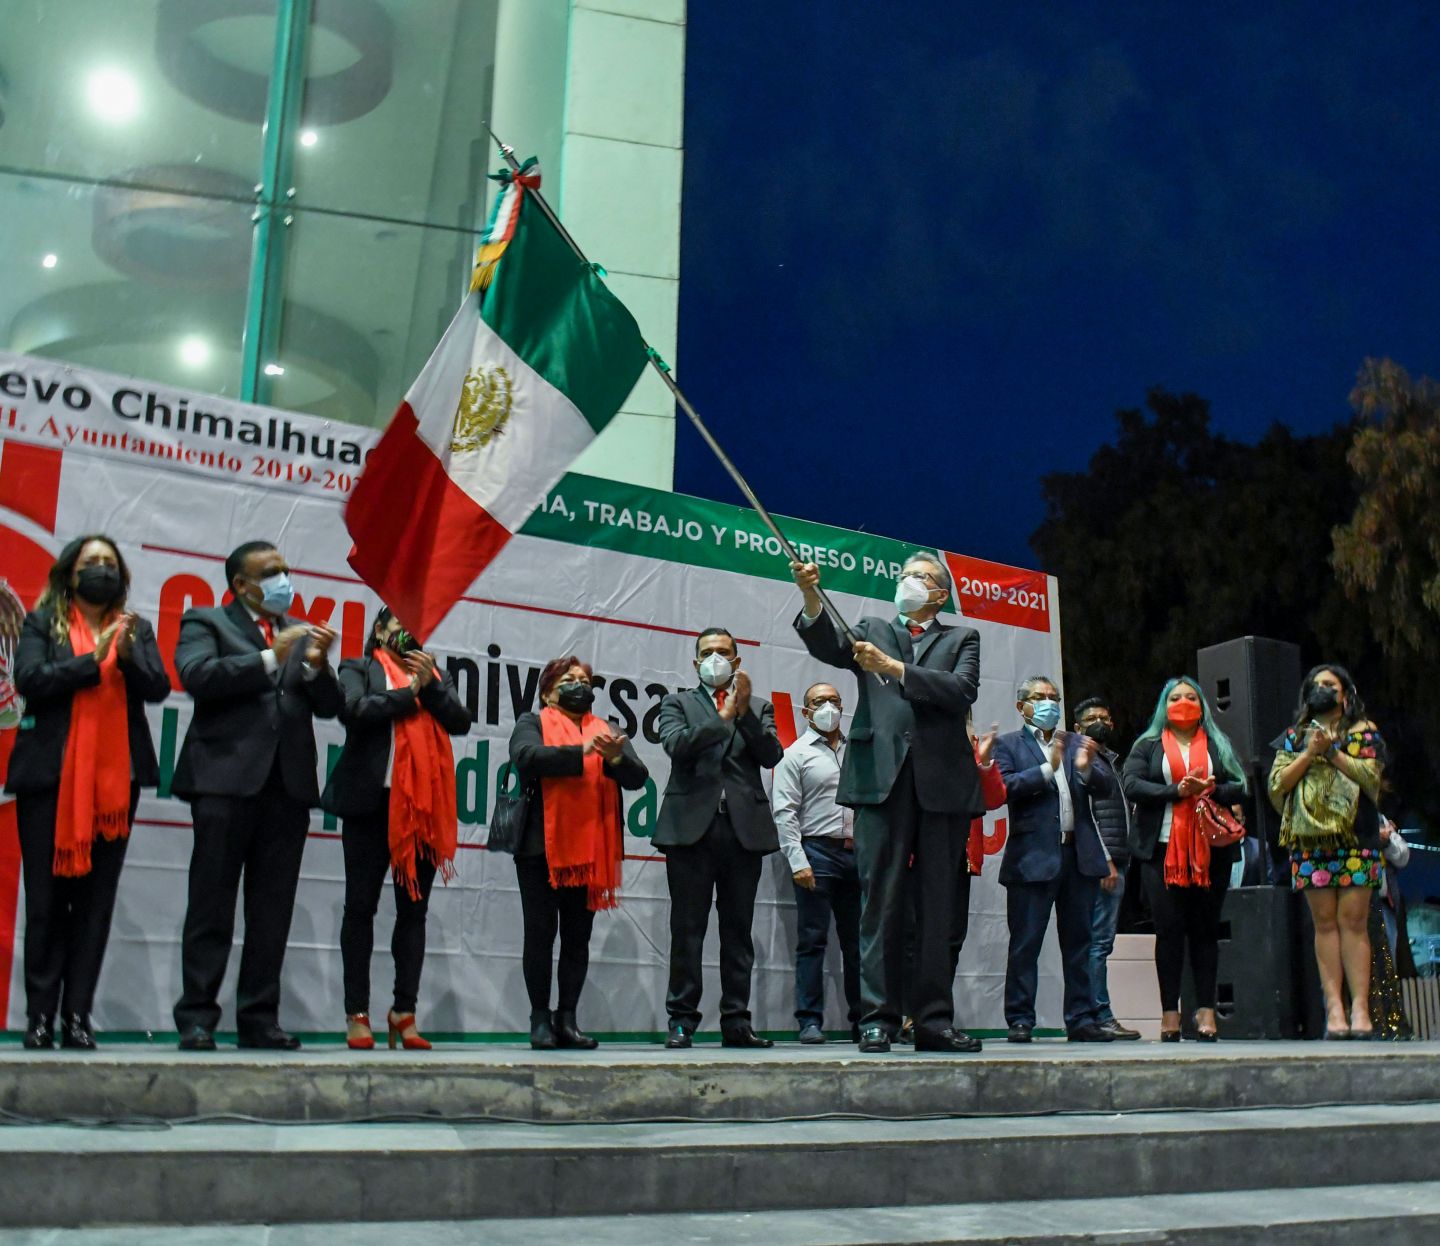 #El gobierno de Chimalhuacán festejó el 211 aniversario del inicio de la de Independencia de México.
